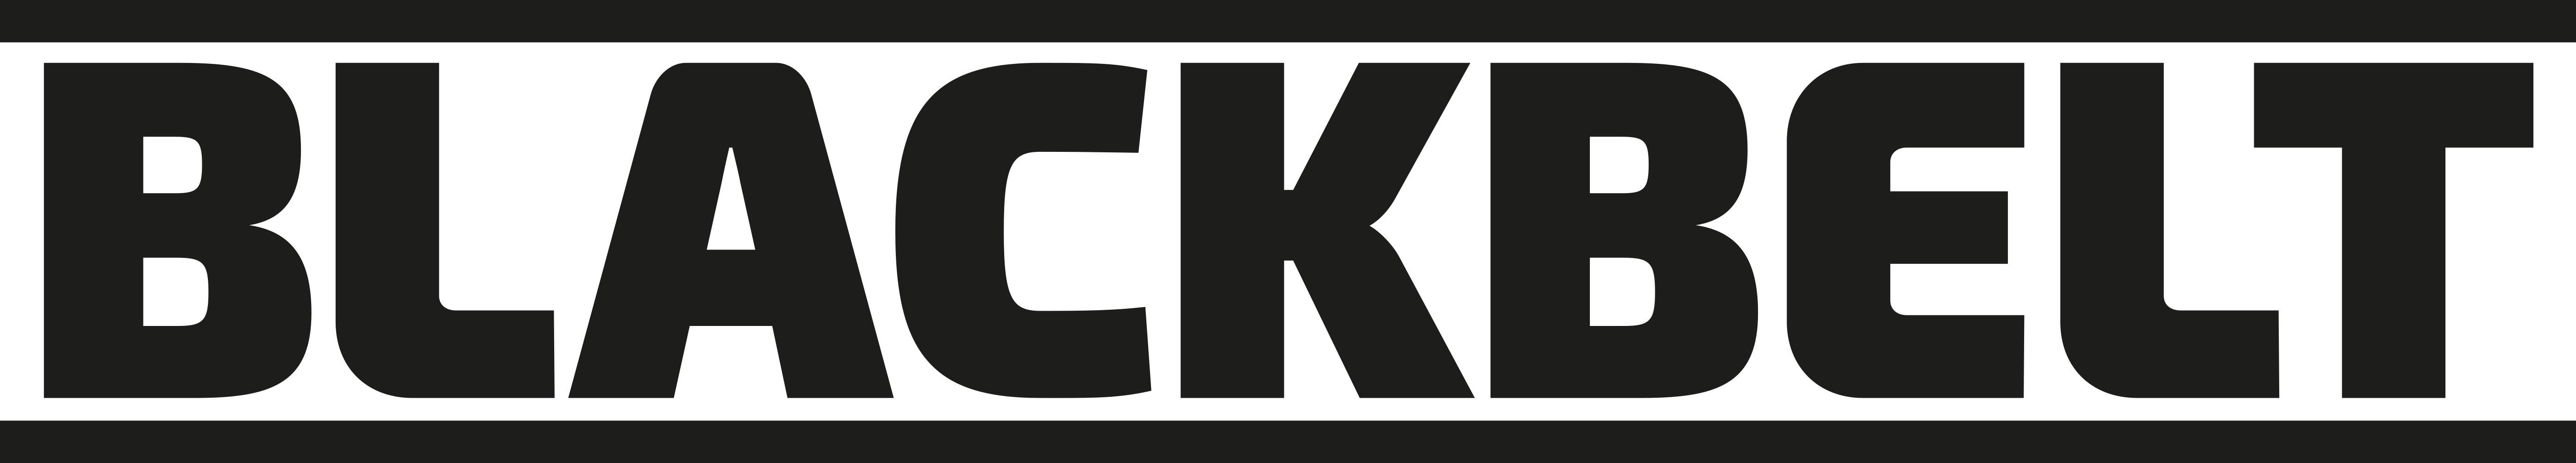 Blackbelt 3D logo